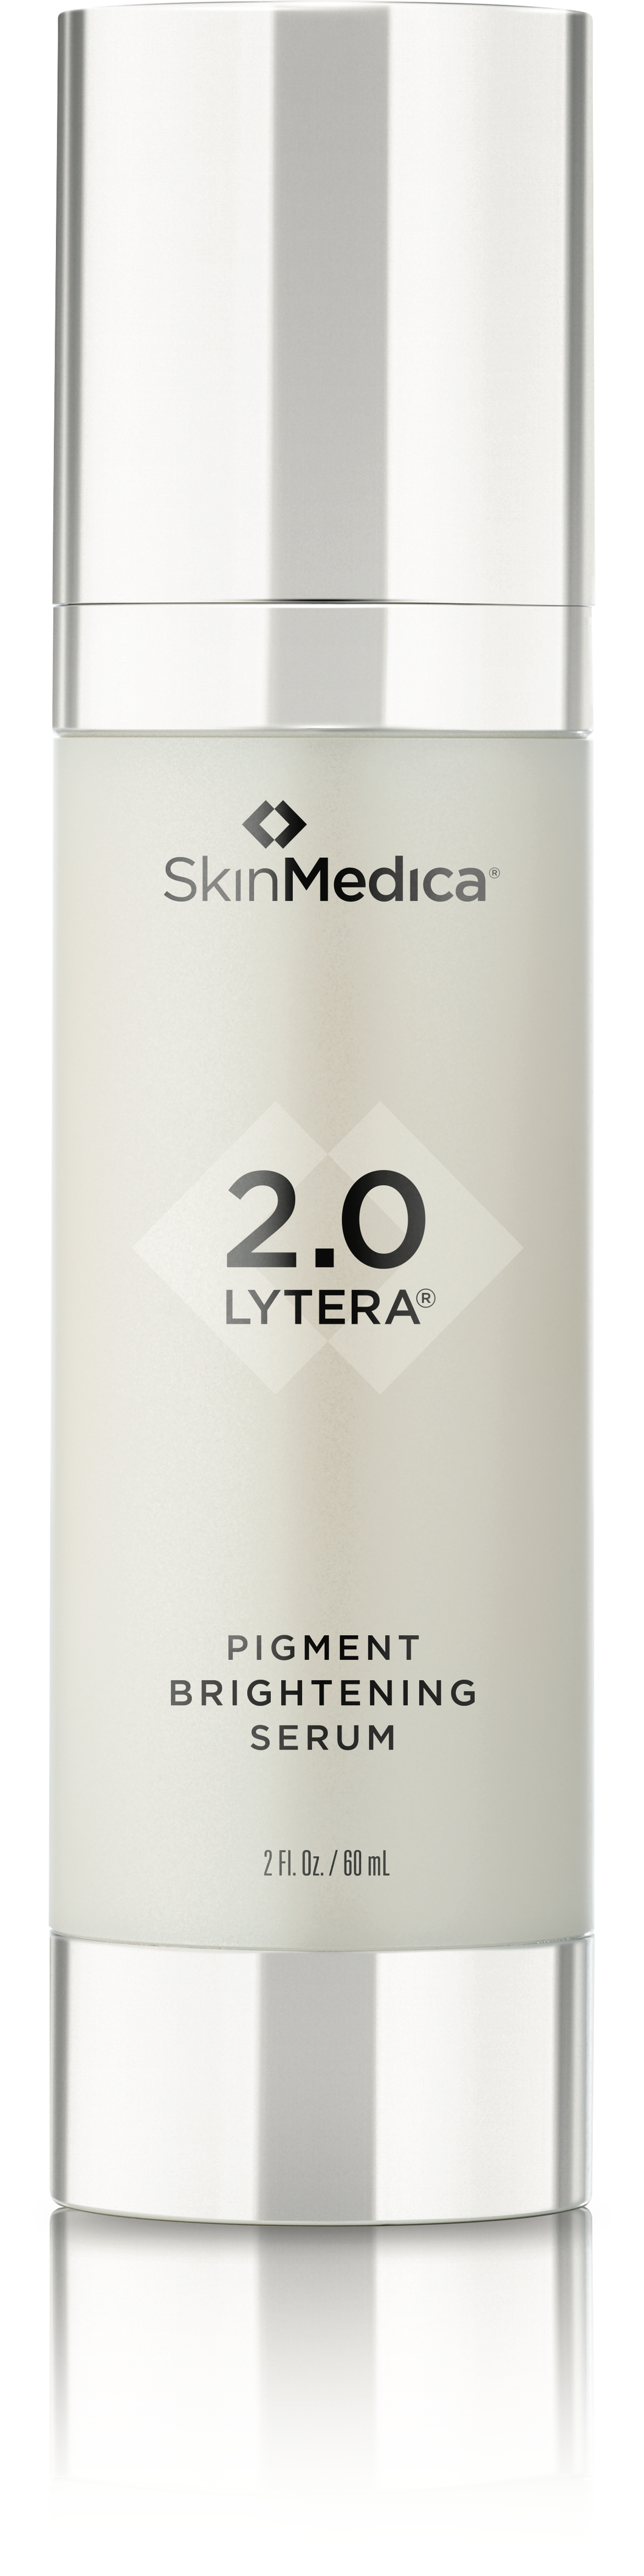 SkinMedica® Lytera Pigment Brightening Serum